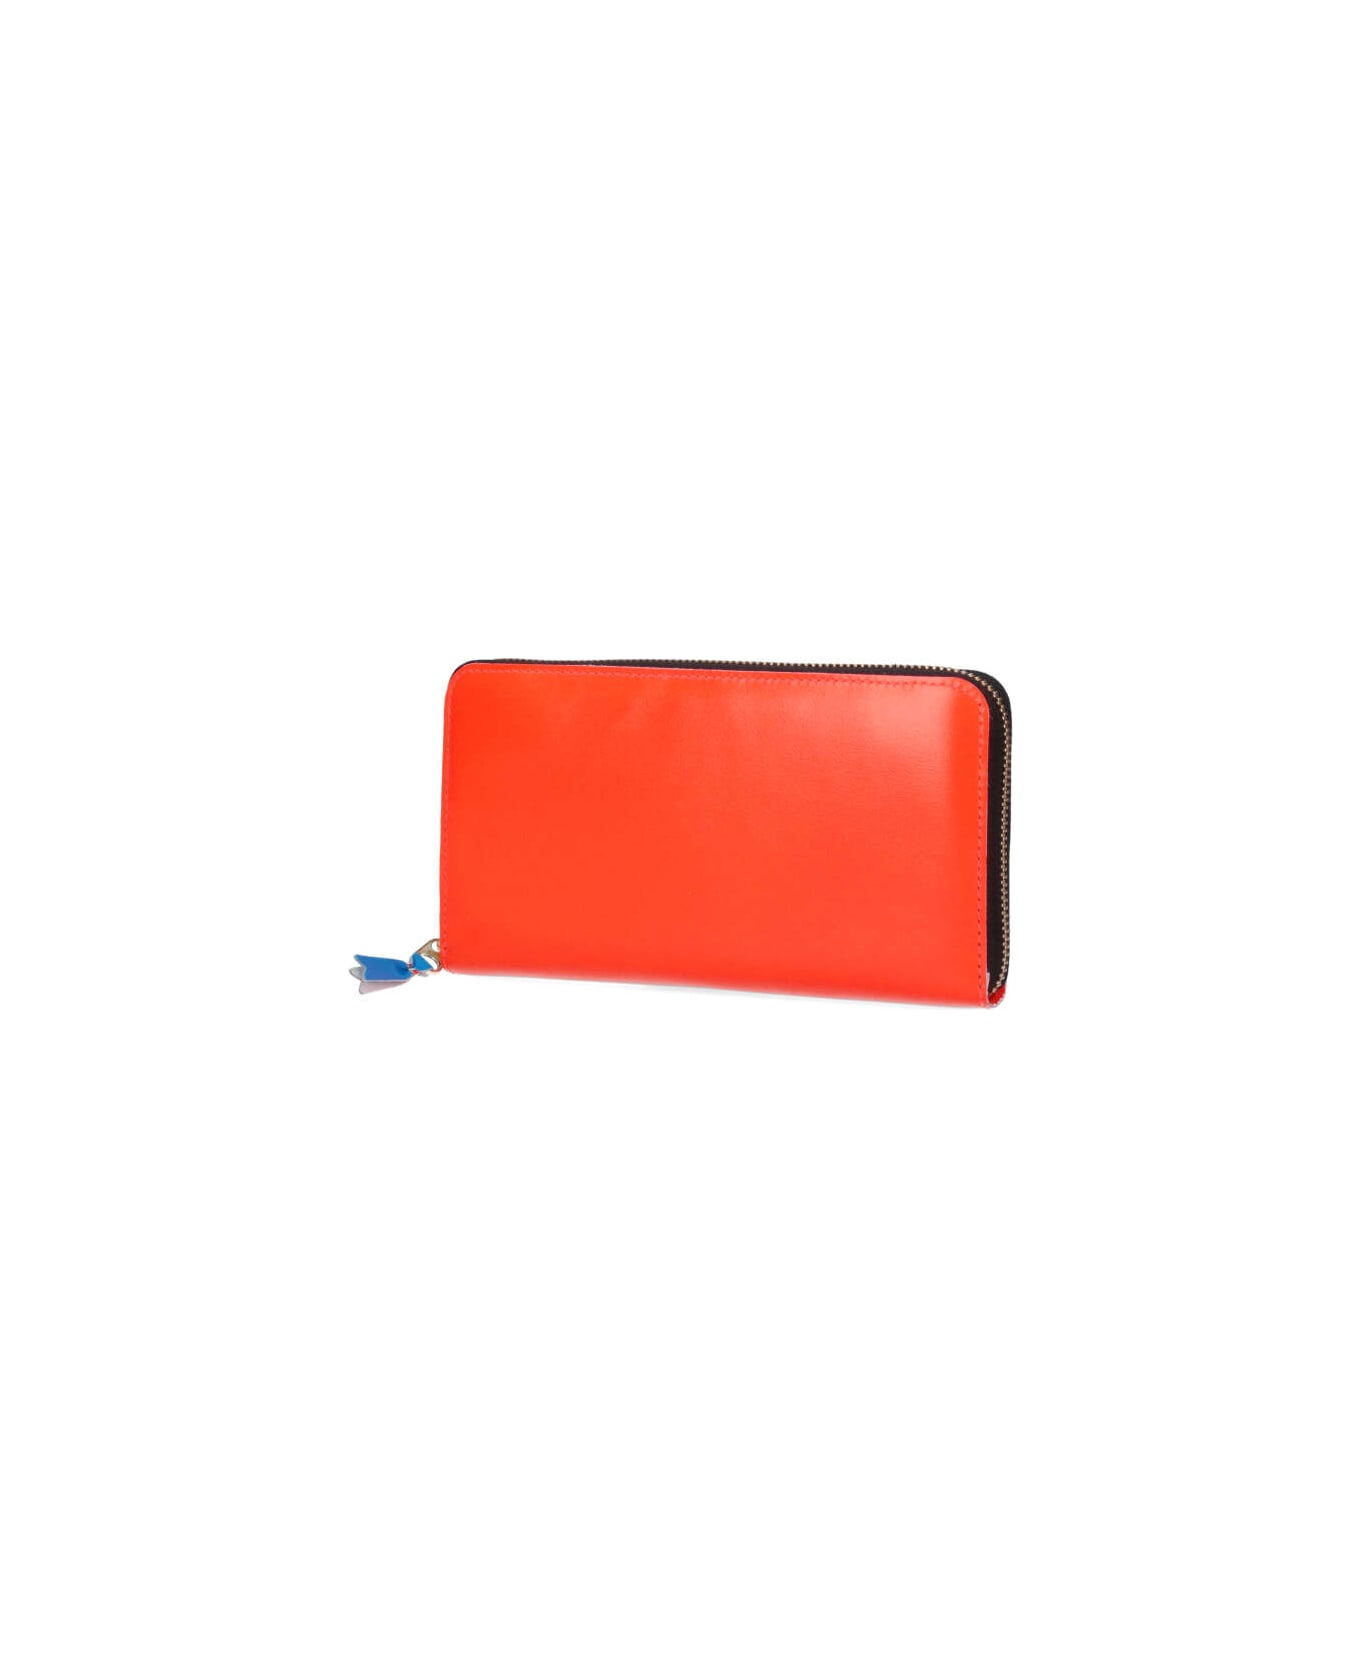 Comme des Garçons Wallet Super Fluo Zipper Wallet - Orange 財布